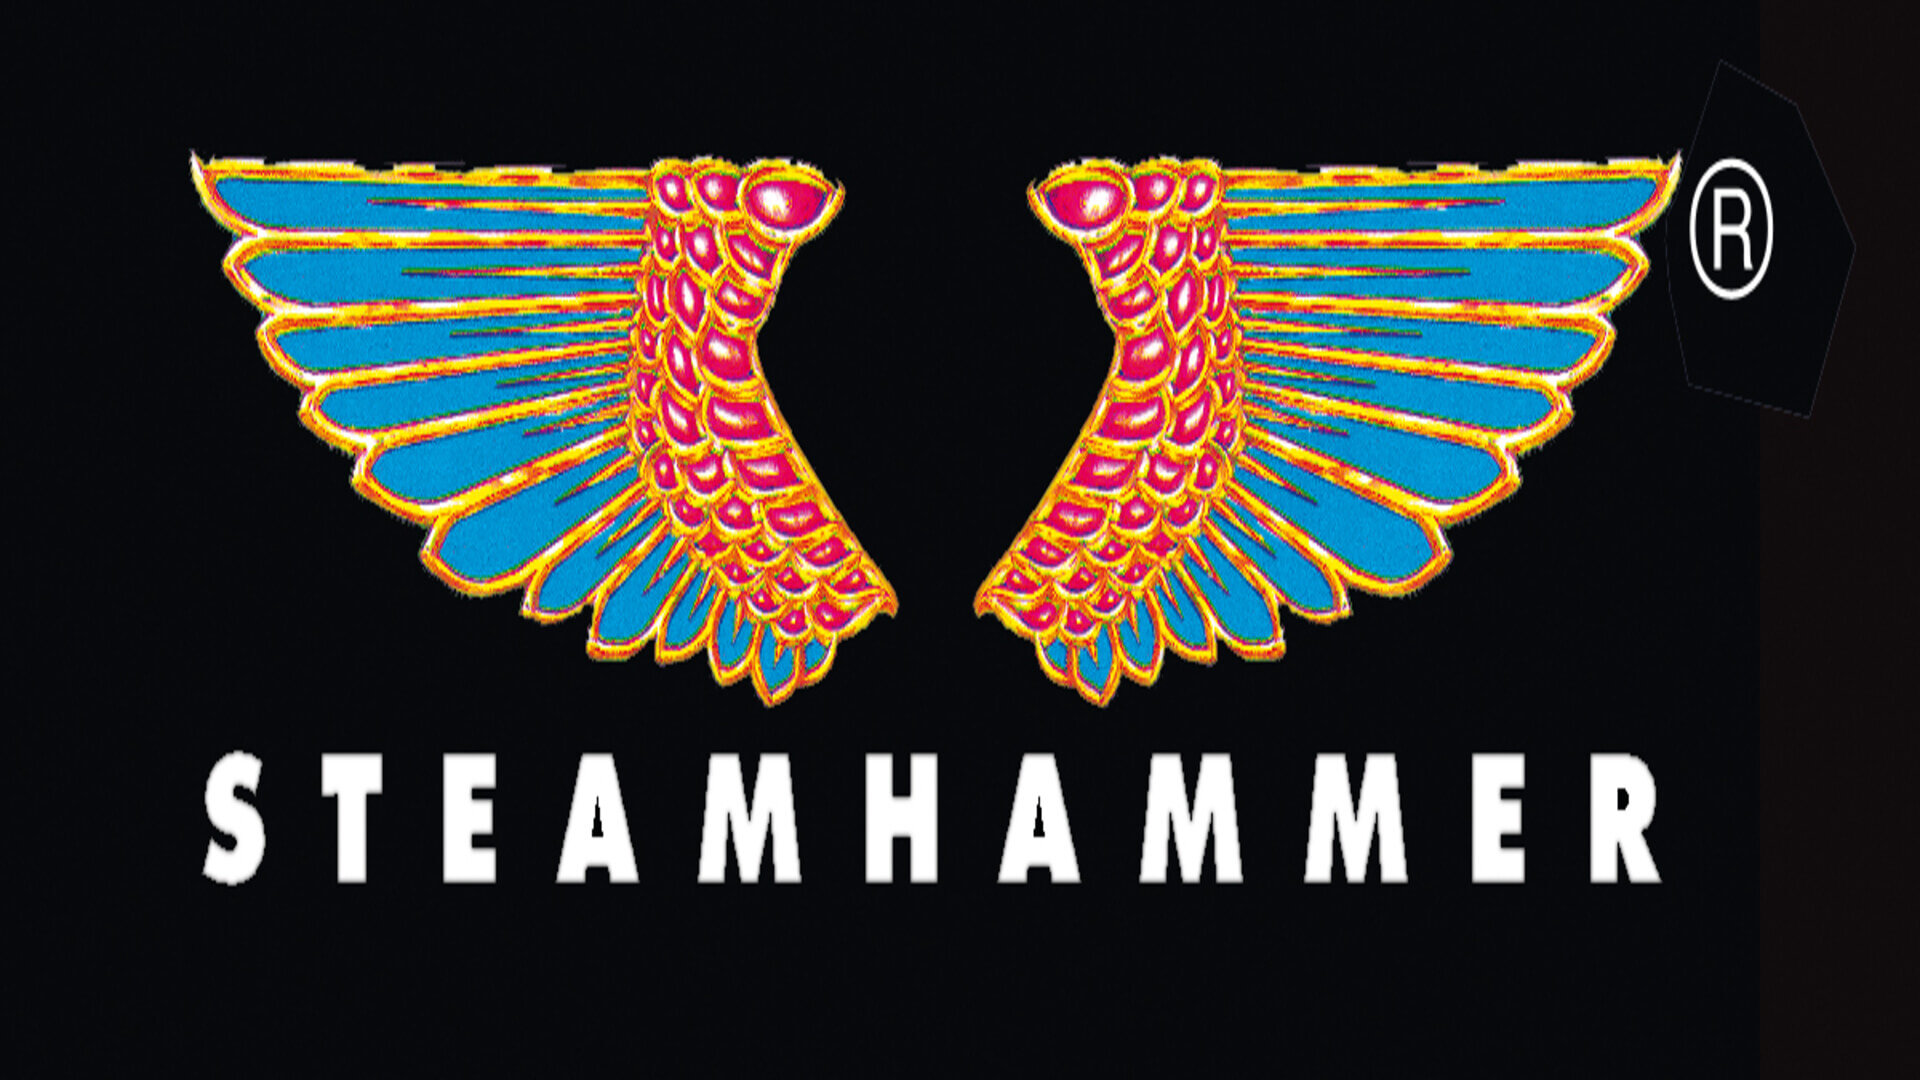 Steamhammer-weiss.jpg